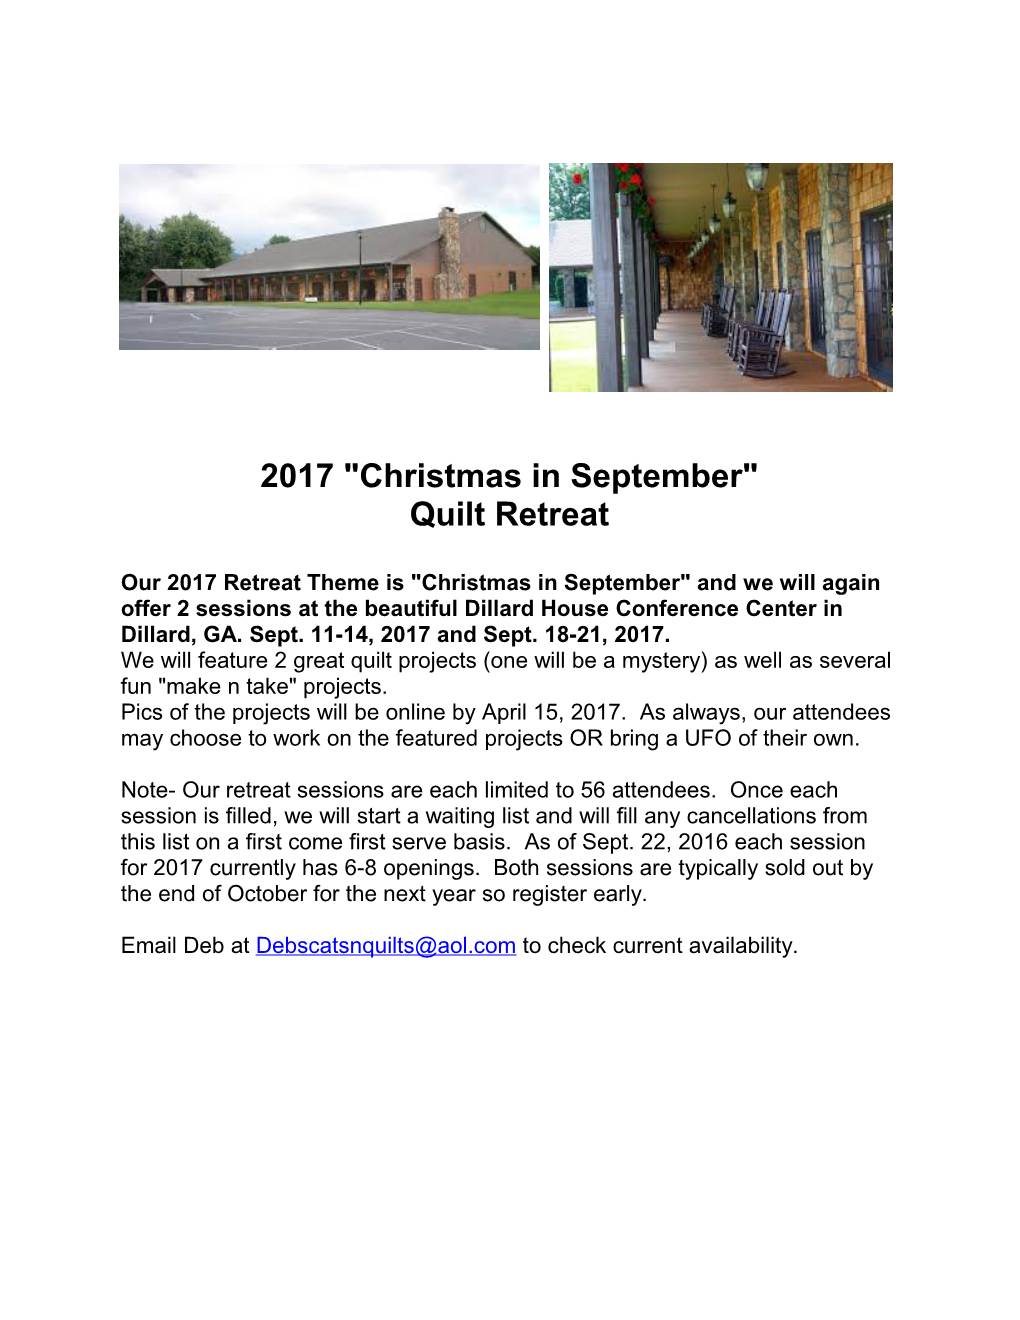 Dillard House Quilt Retreat 2017